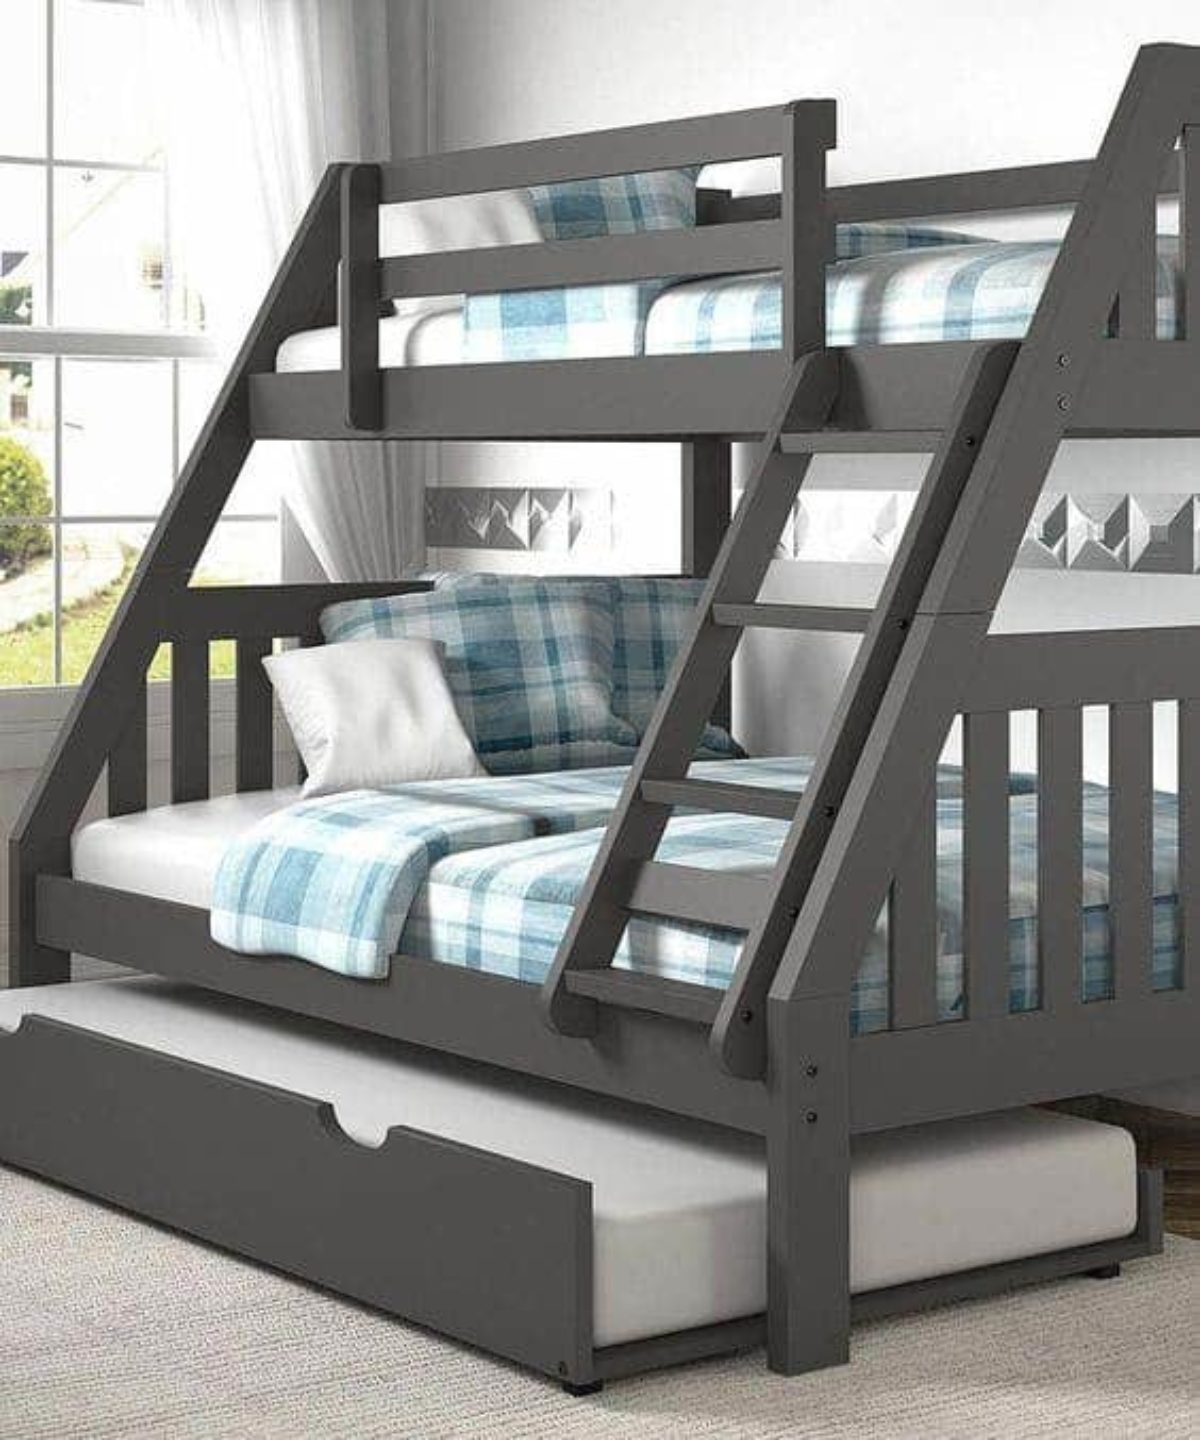 5 Steps To Make A Bunk Bed Ladder Safer, Bunk Bed Ladder Cover Barrier